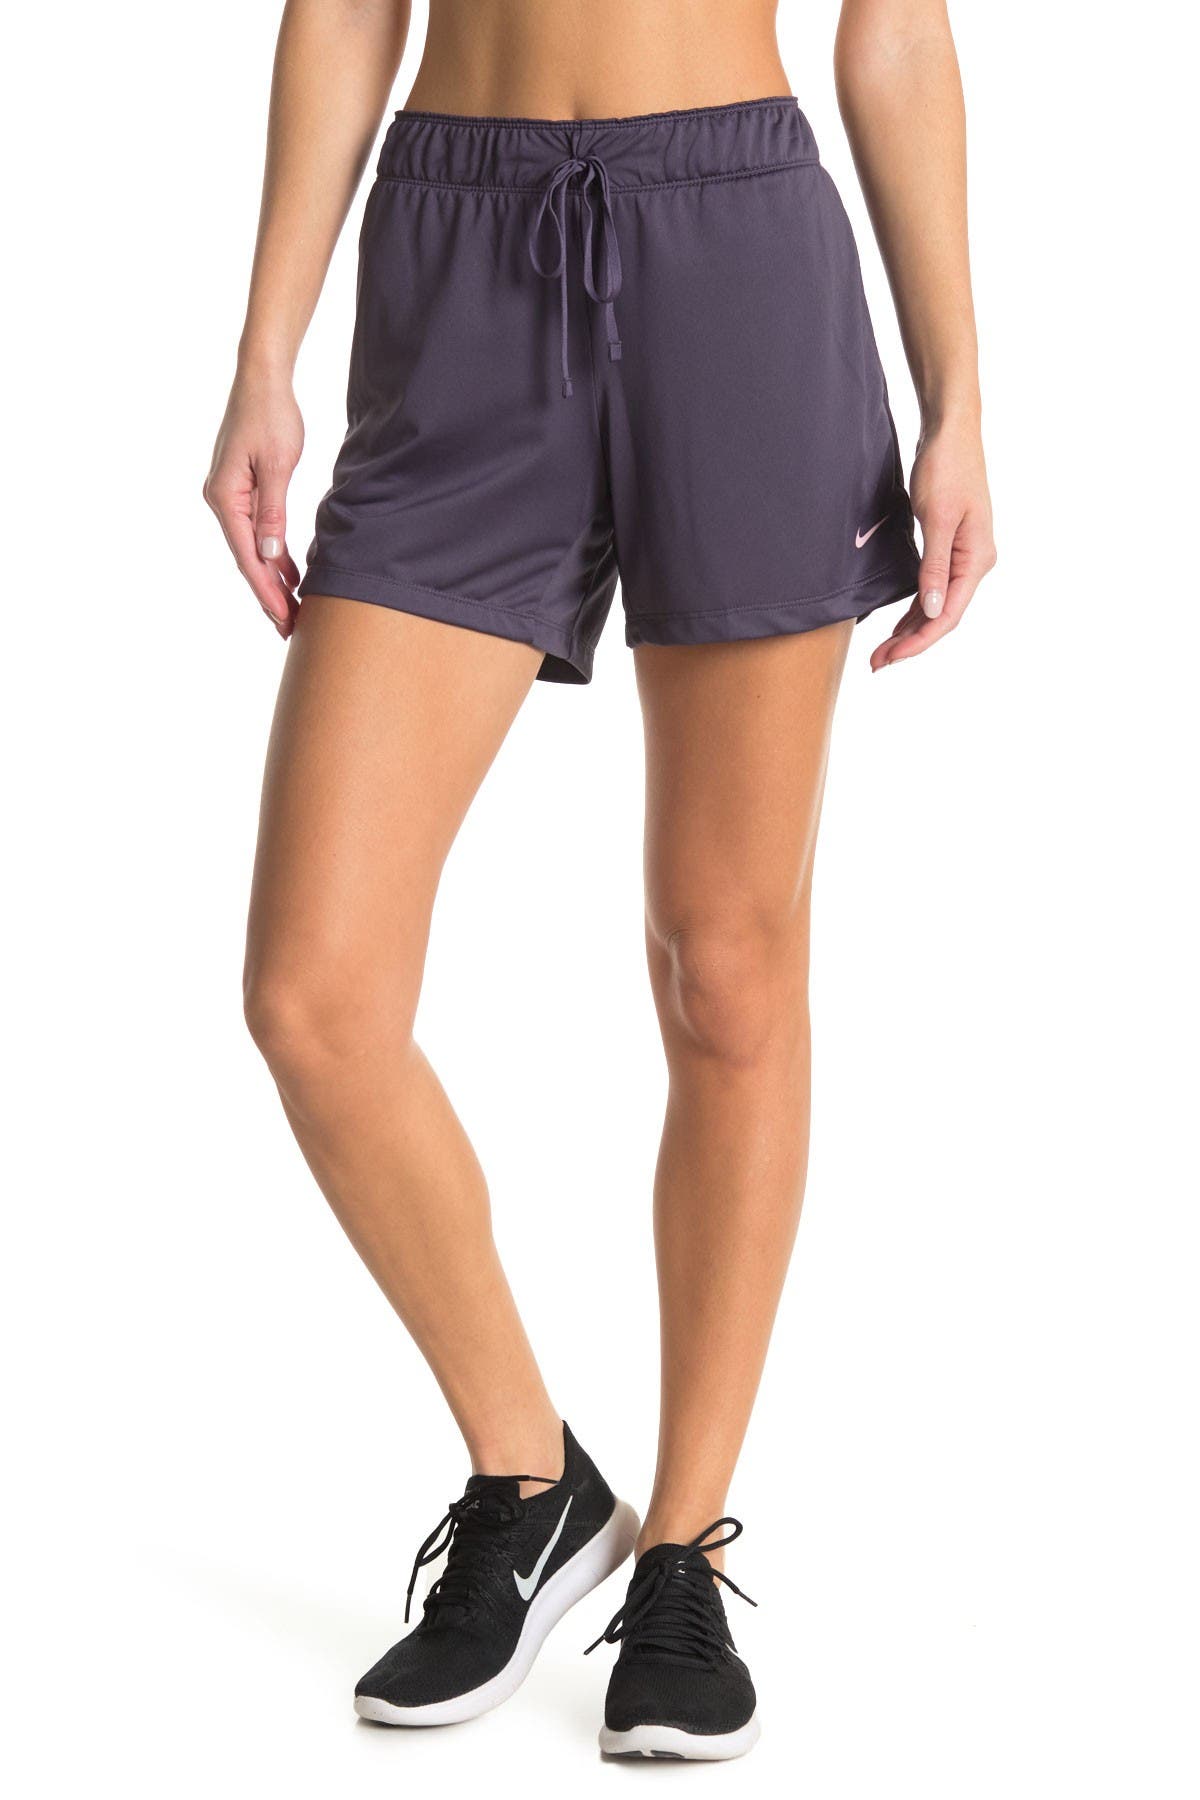 Nike Women's Shorts | Nordstrom Rack